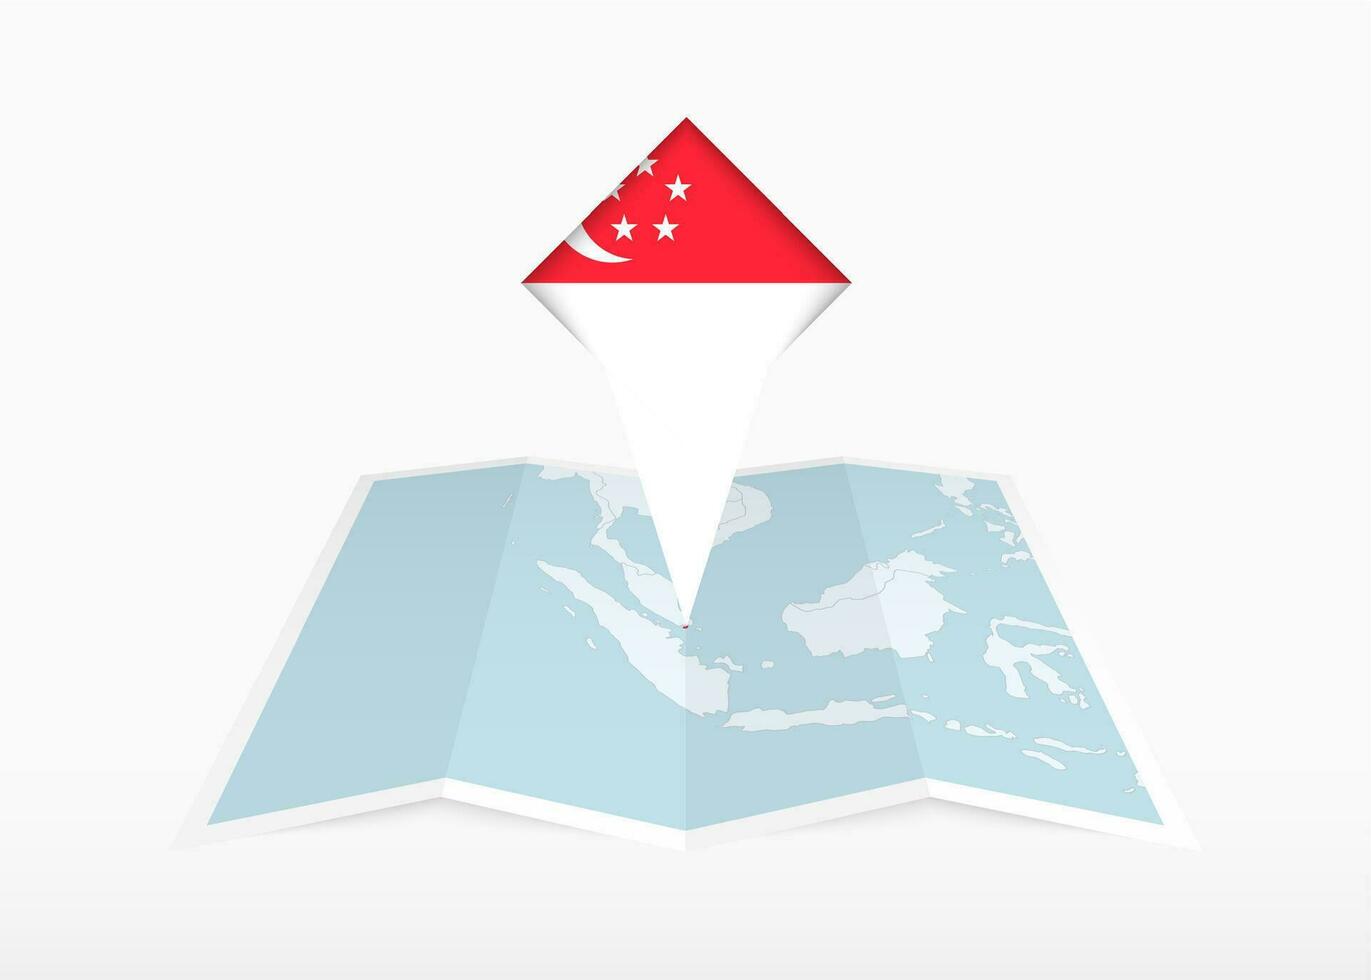 Singapour est représenté sur une plié papier carte et épinglé emplacement marqueur avec drapeau de Singapour. vecteur